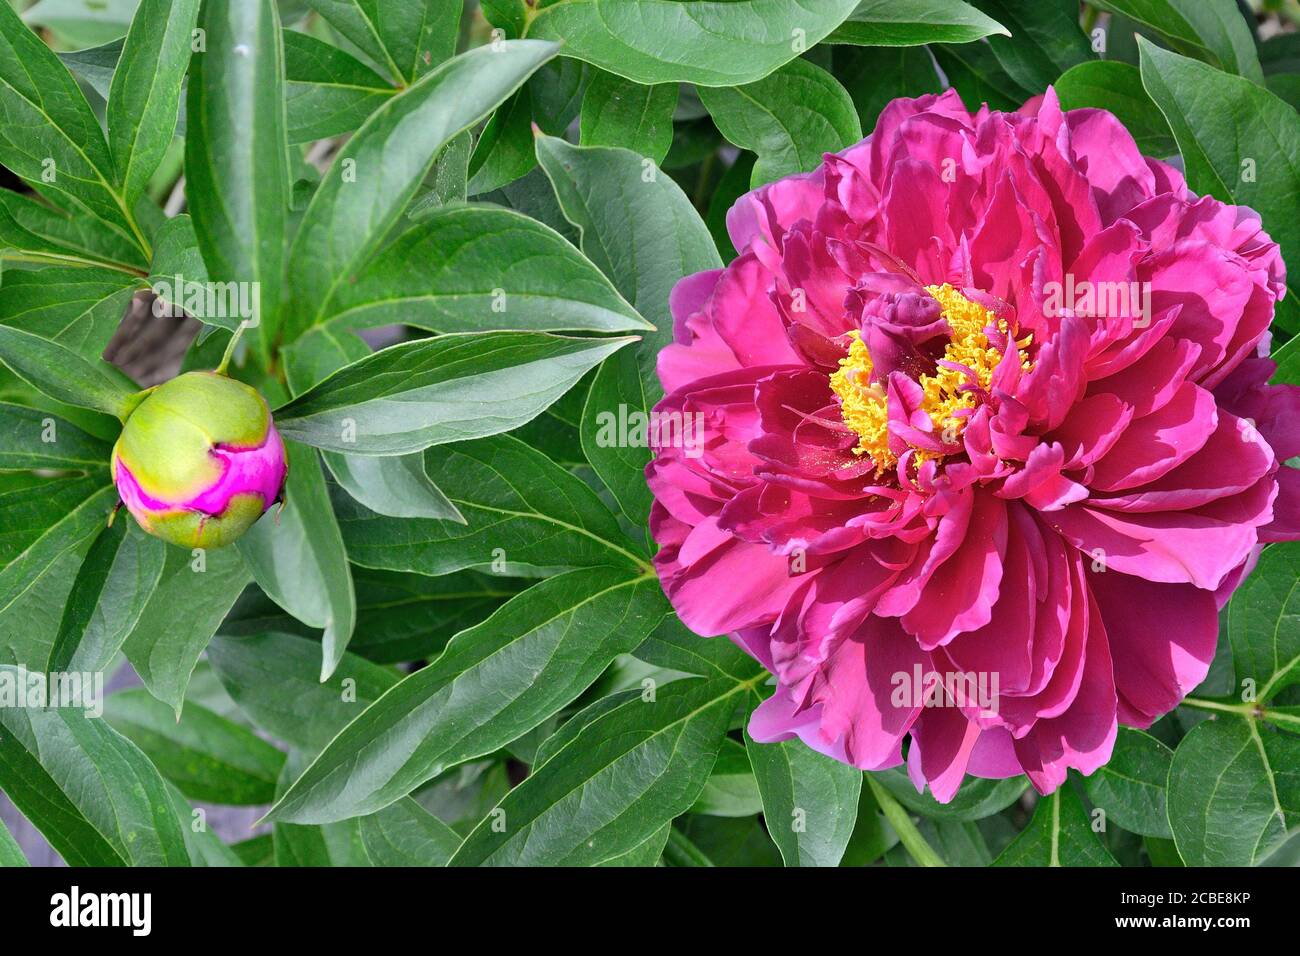 Bel fiore rosa di peonia (Paeonia suffruticosa) primo piano con germoglio e foglie verdi sul letto fiorito nel giardino. Bellezza della natura, floricoltura, gard Foto Stock